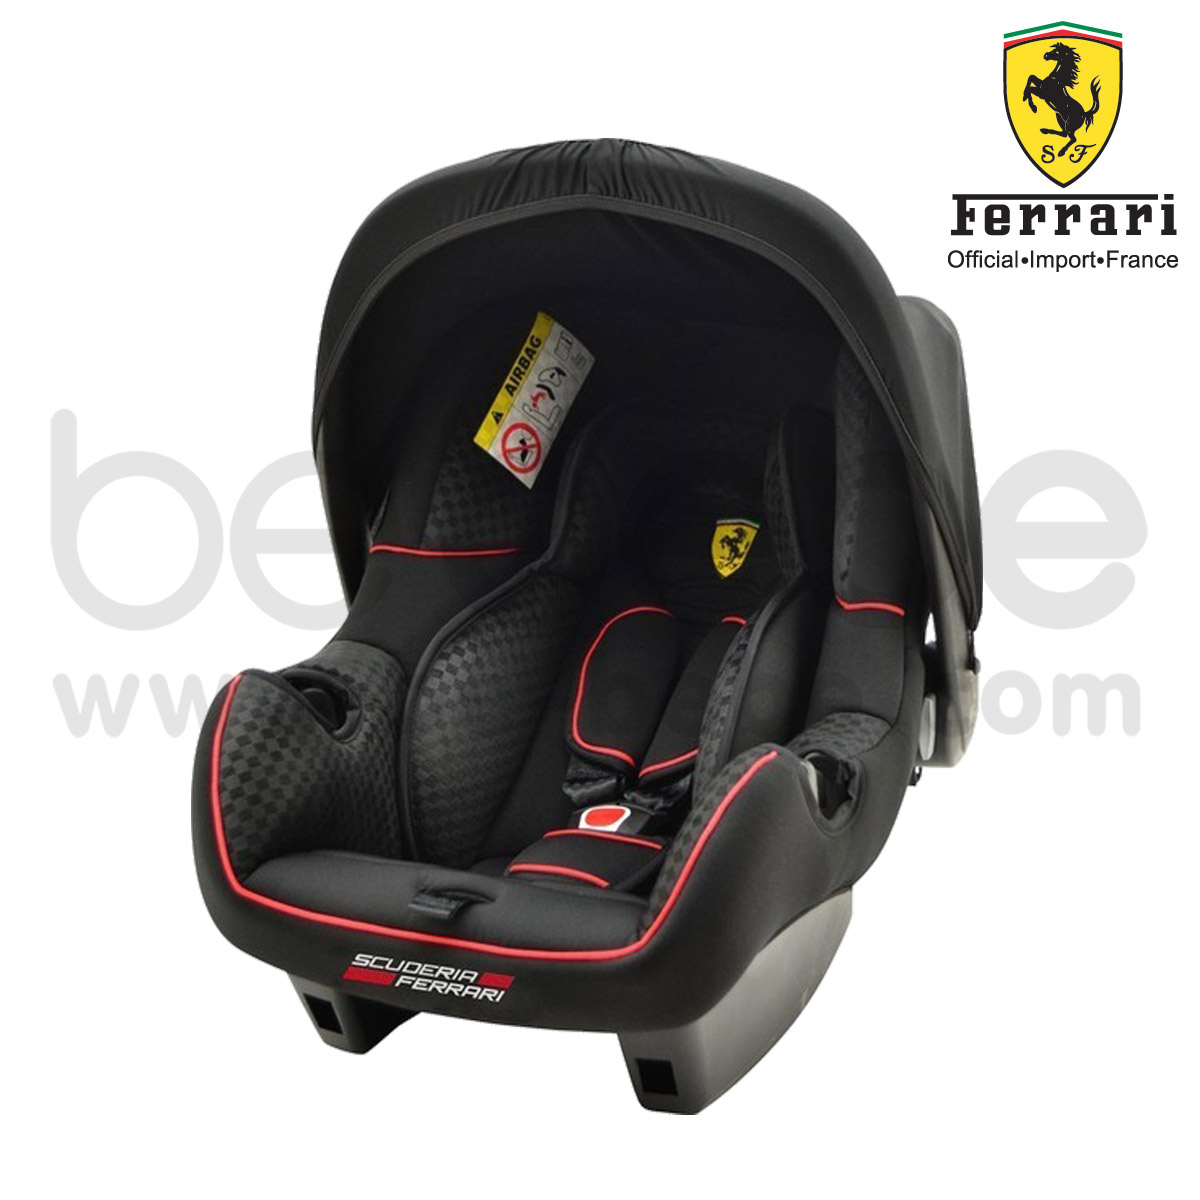  Ferrari : CarSeat Be One (Black) แถม รถเข็นเด็ก P7 Canne Furia